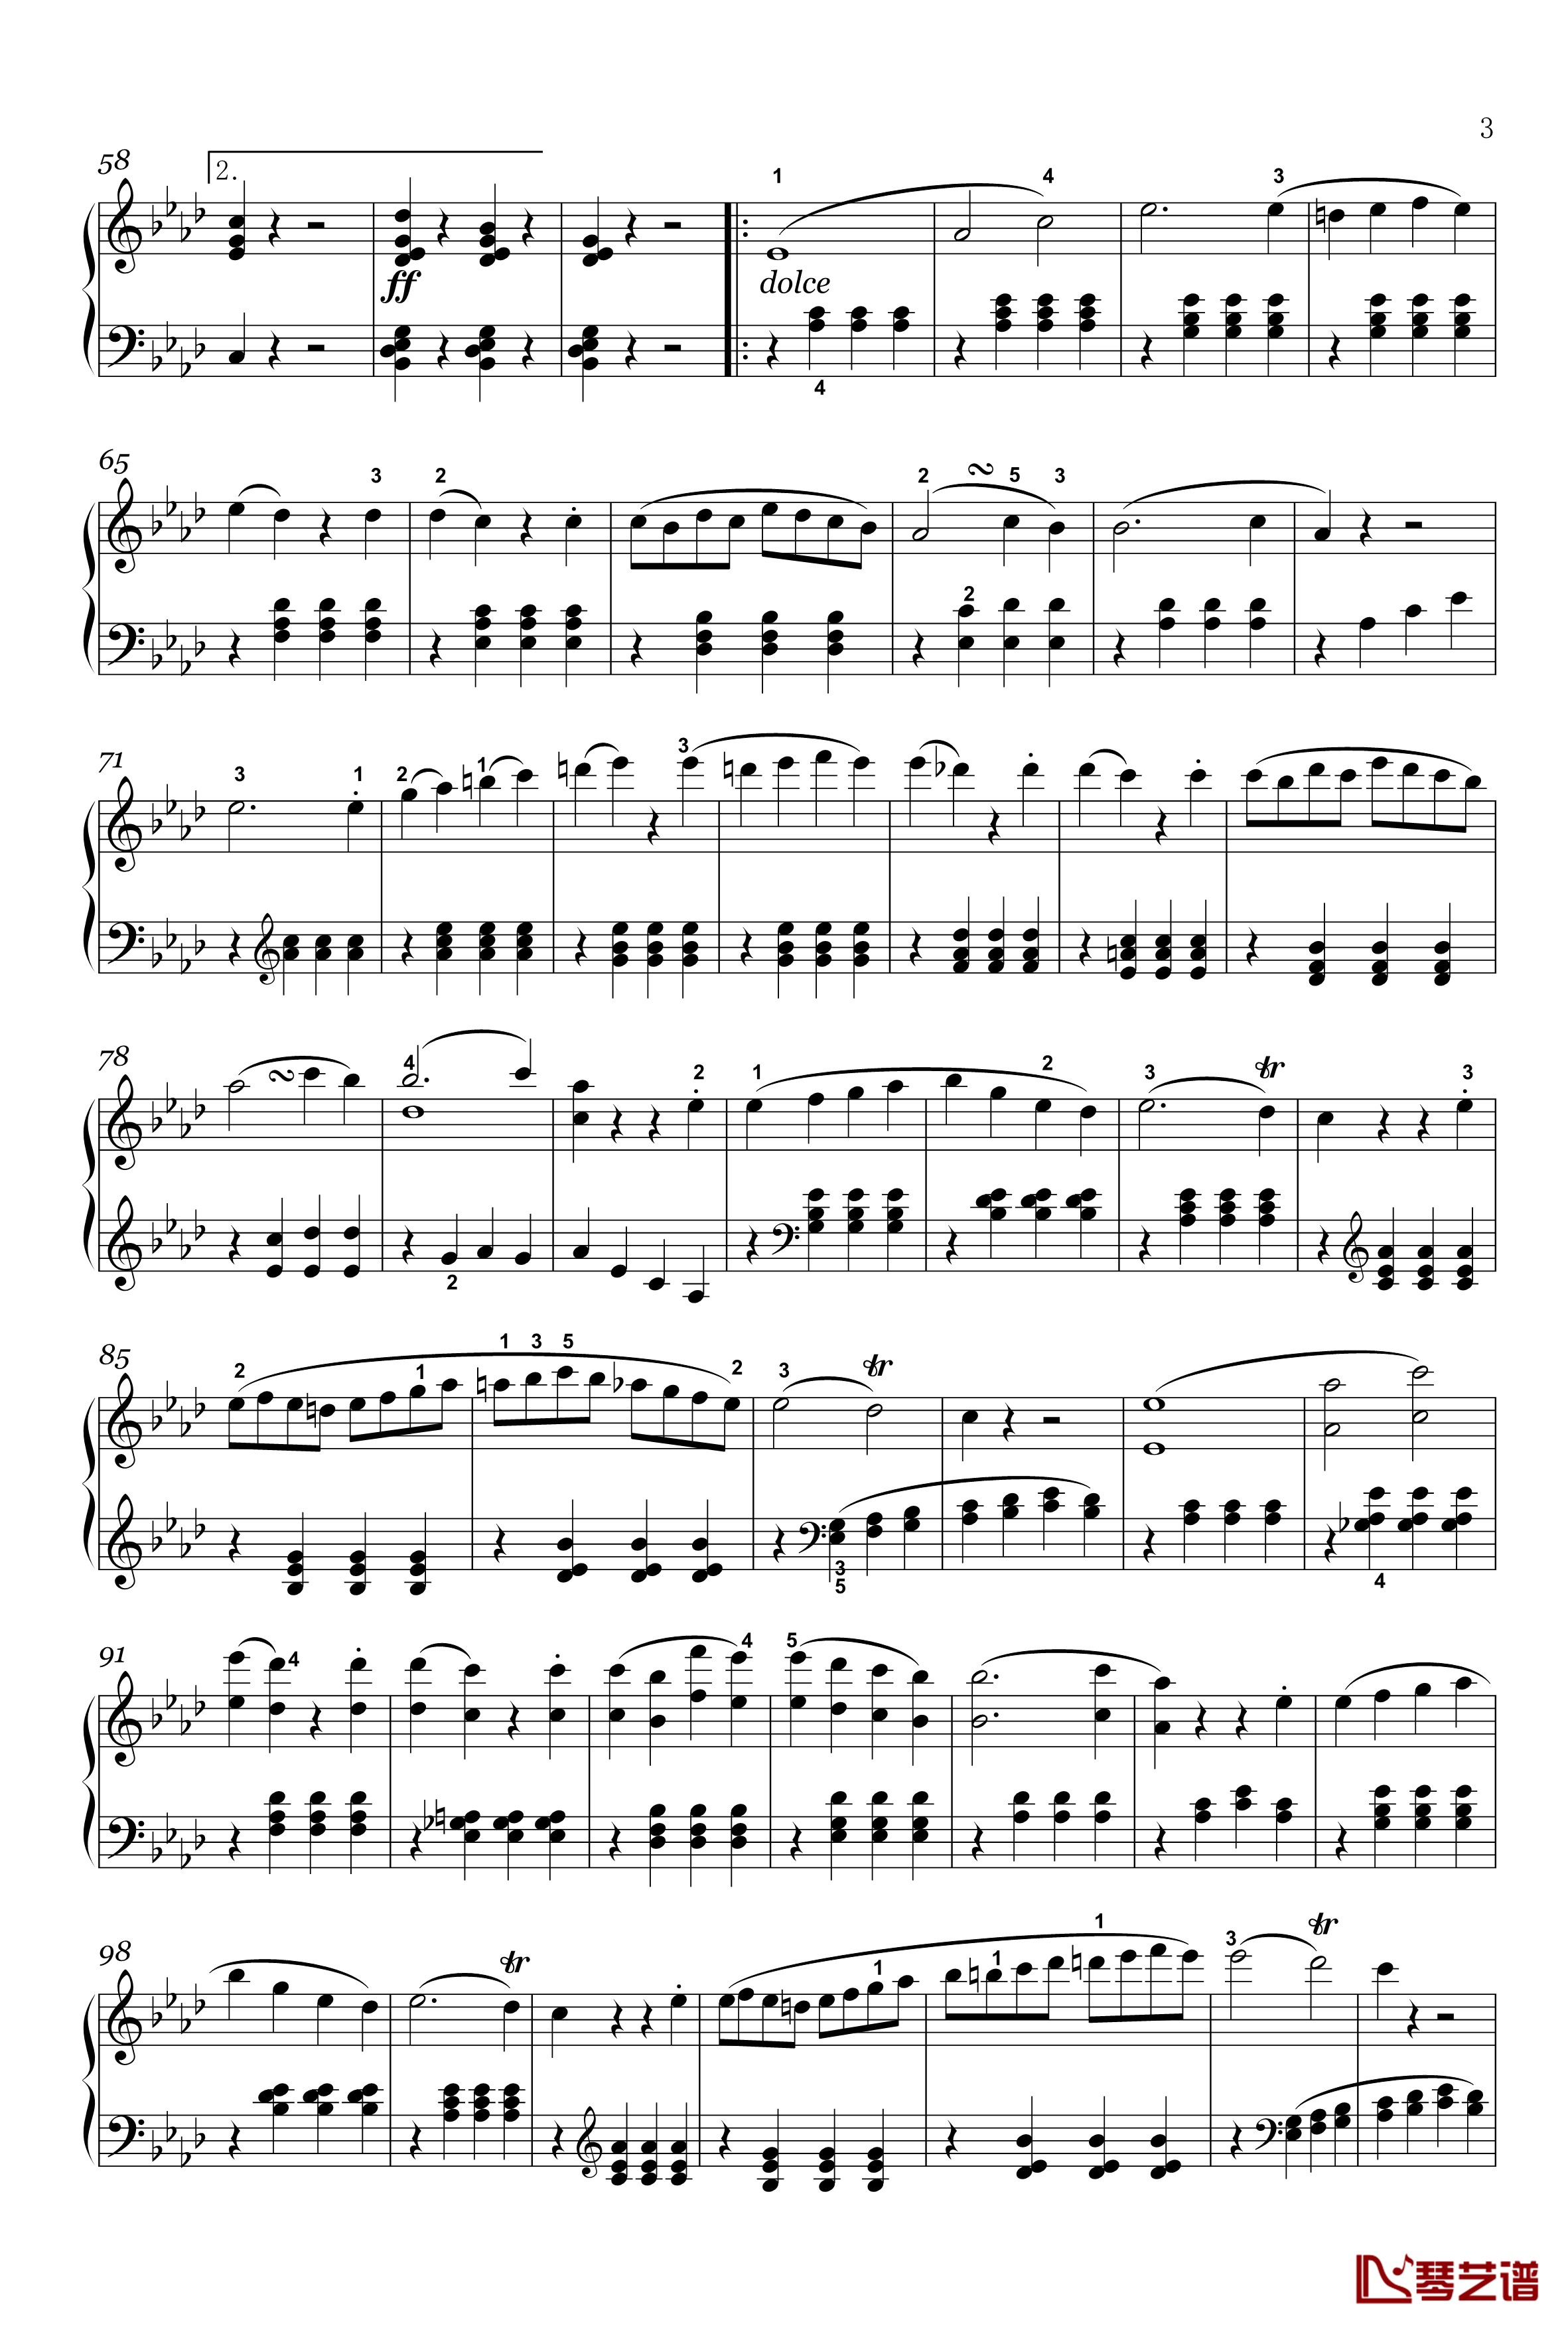 奏鸣曲钢琴谱-op-2-1-第四乐章-贝多芬-beethoven3